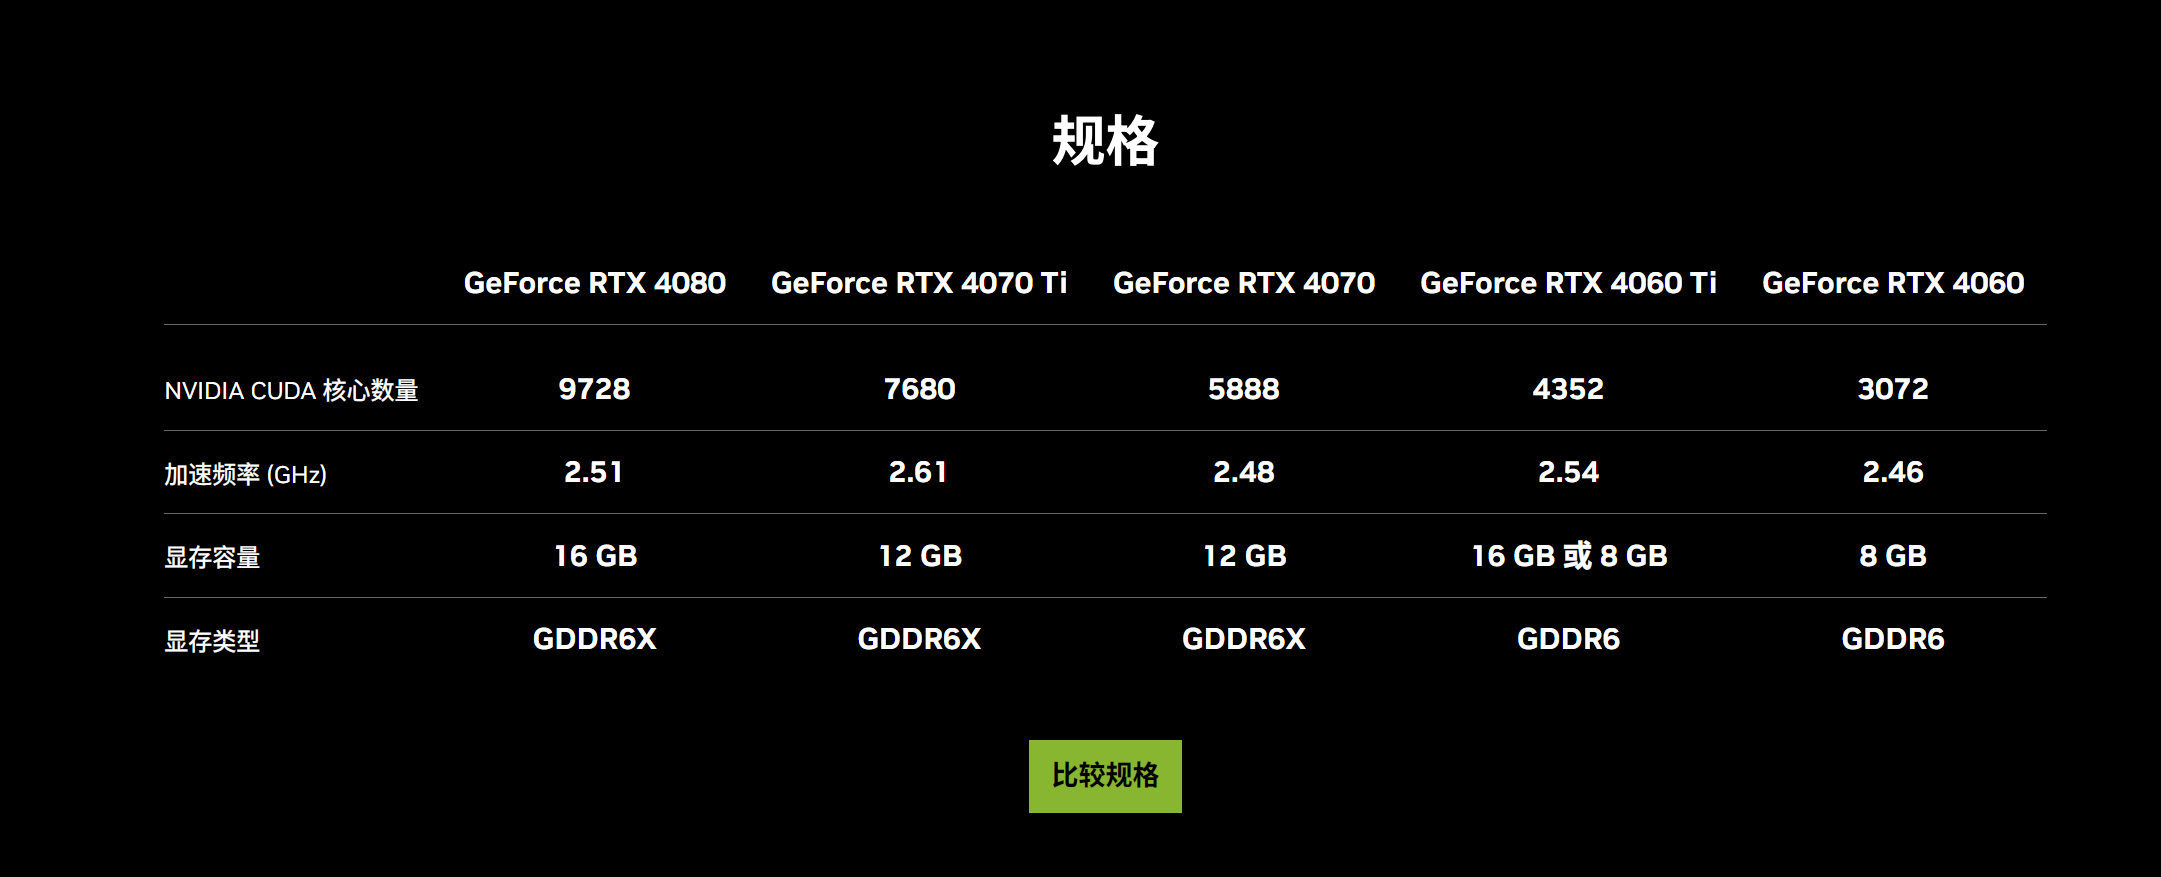 削减AI性能！网传NVIDIA准备面向中国市场推出RTX 4090 D特供版显卡